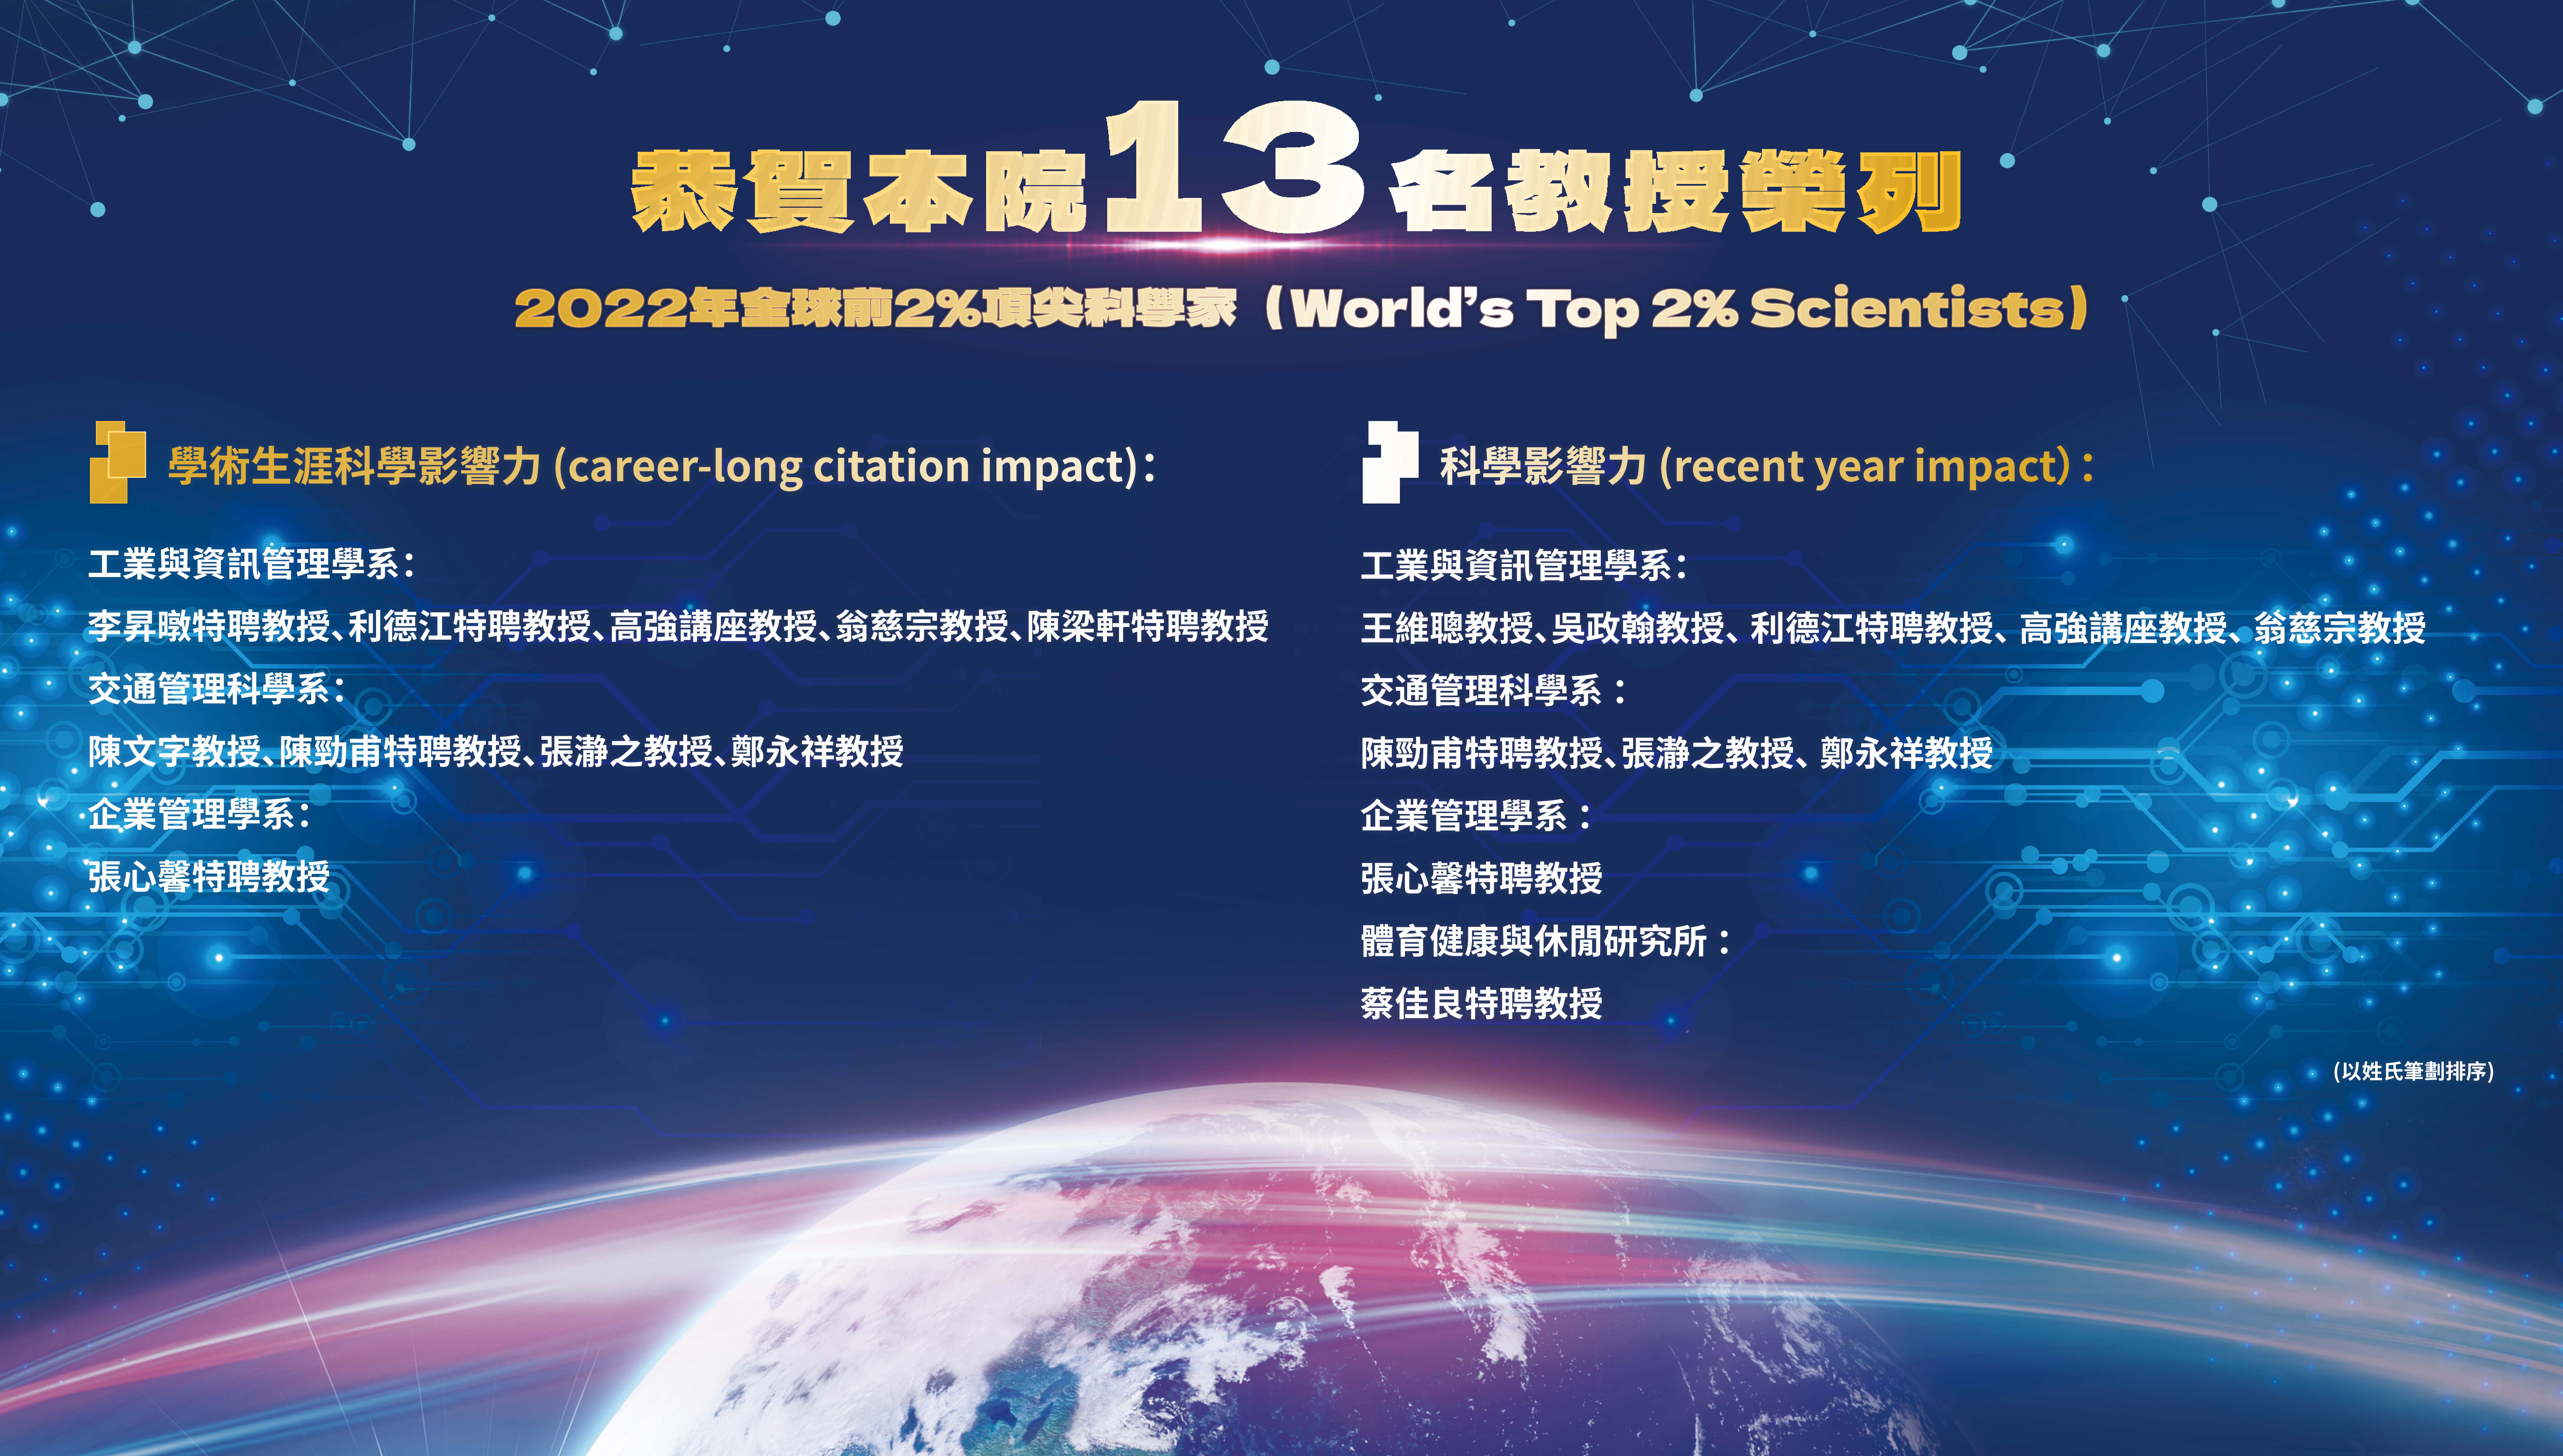 本院13名教授榮列 「2022年全球前2%頂尖科學家(World's Top 2% Scientists)」